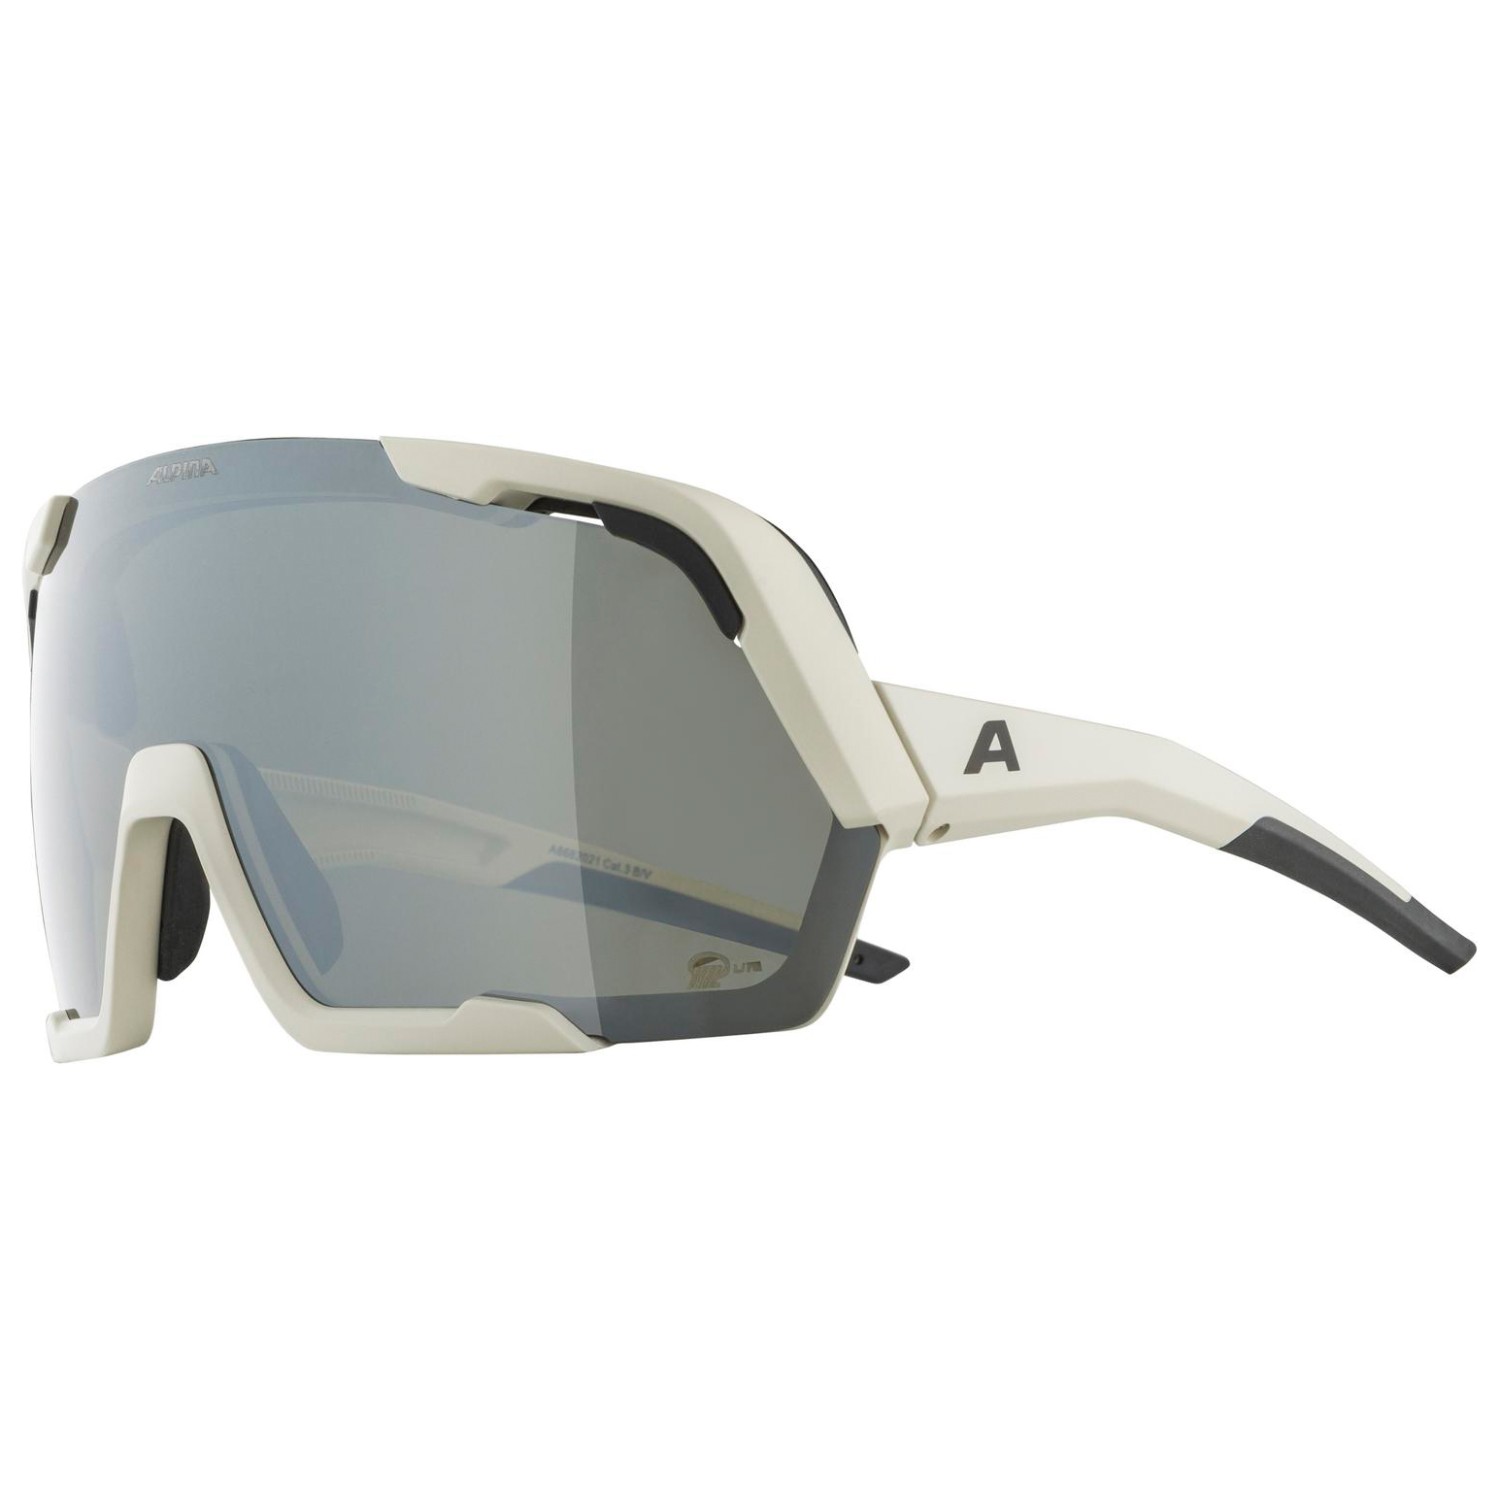 косметичка travelcosmetic signature bold grey wc1033 Велосипедные очки Alpina Rocket Bold Q Lite Mirror Cat 3, цвет Cool/Grey Matt